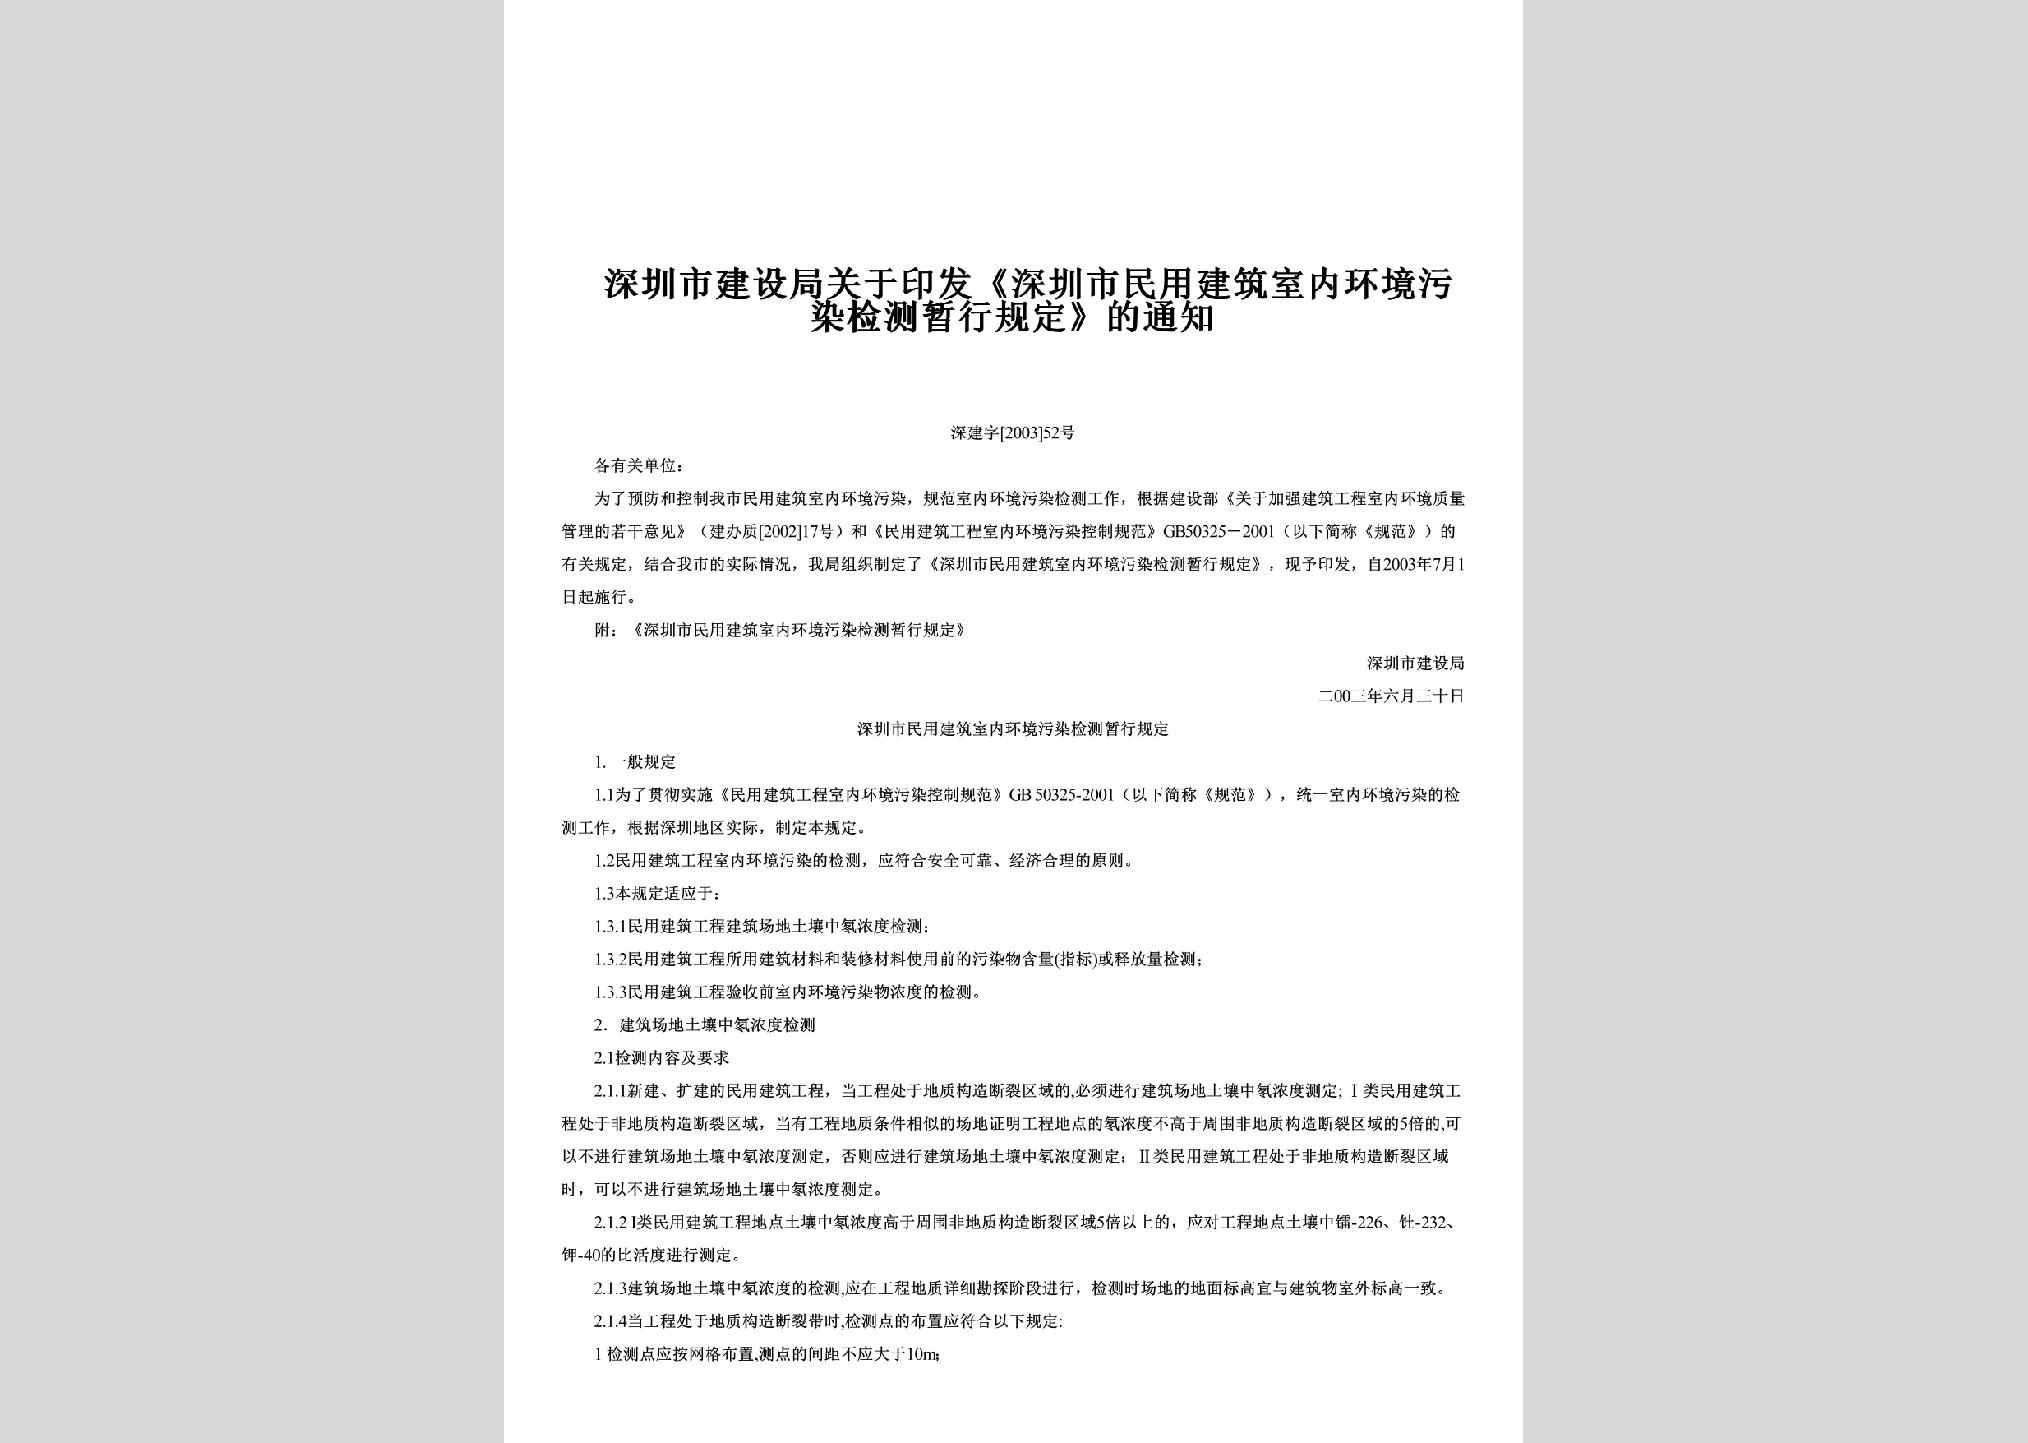 深建字[2003]52号：关于印发《深圳市民用建筑室内环境污染检测暂行规定》的通知